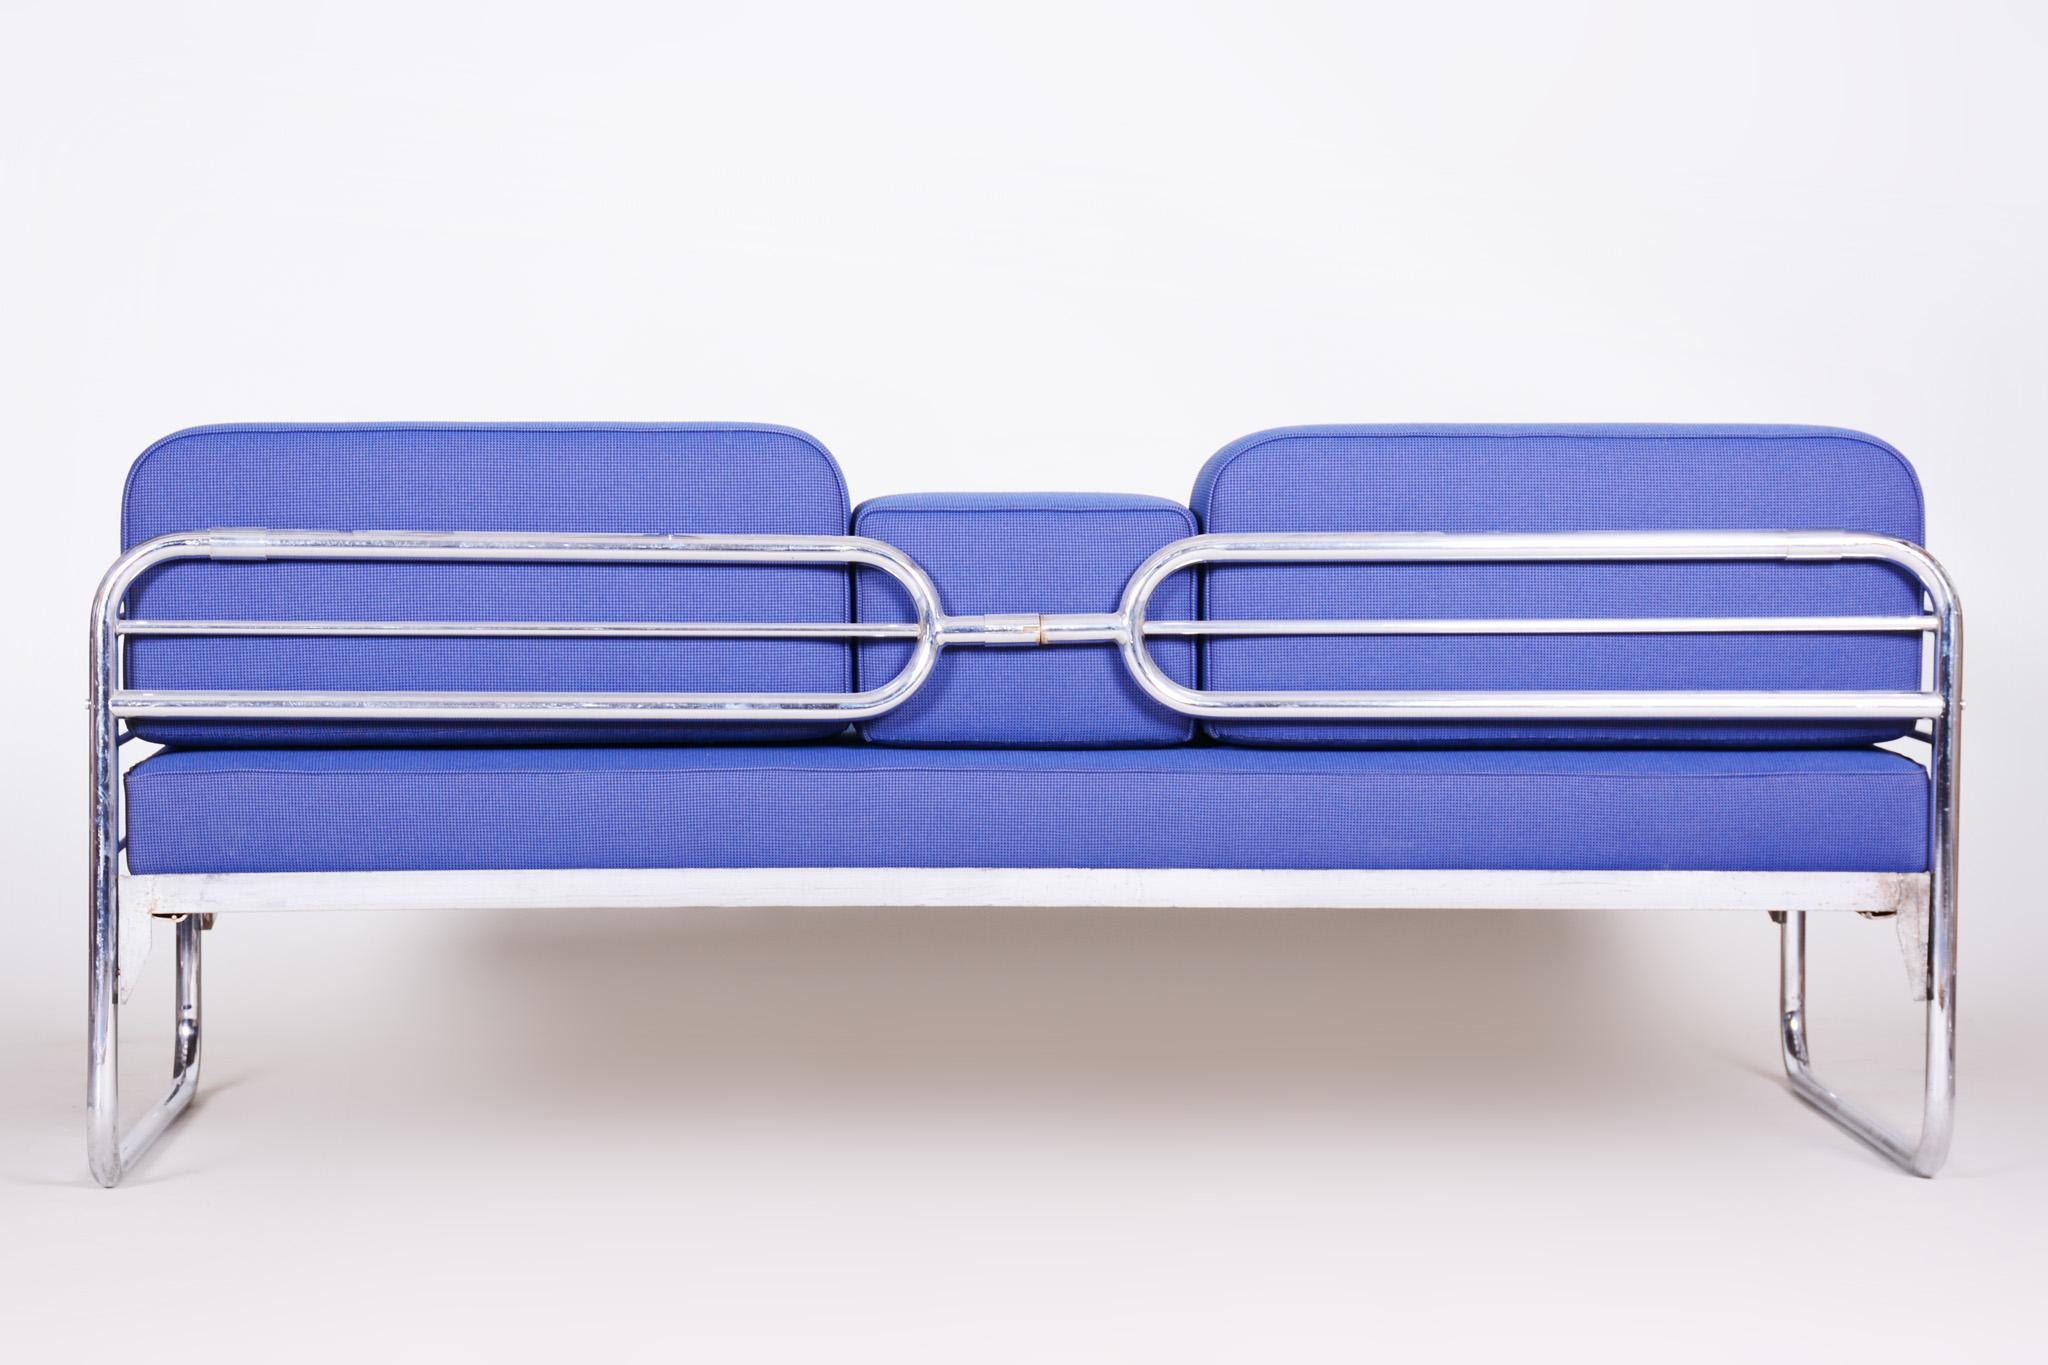 20th Century Czech Bauhaus Blue Tubular Chrome Sofa by Hynek Gottwald, New Upholstery, 1930s For Sale